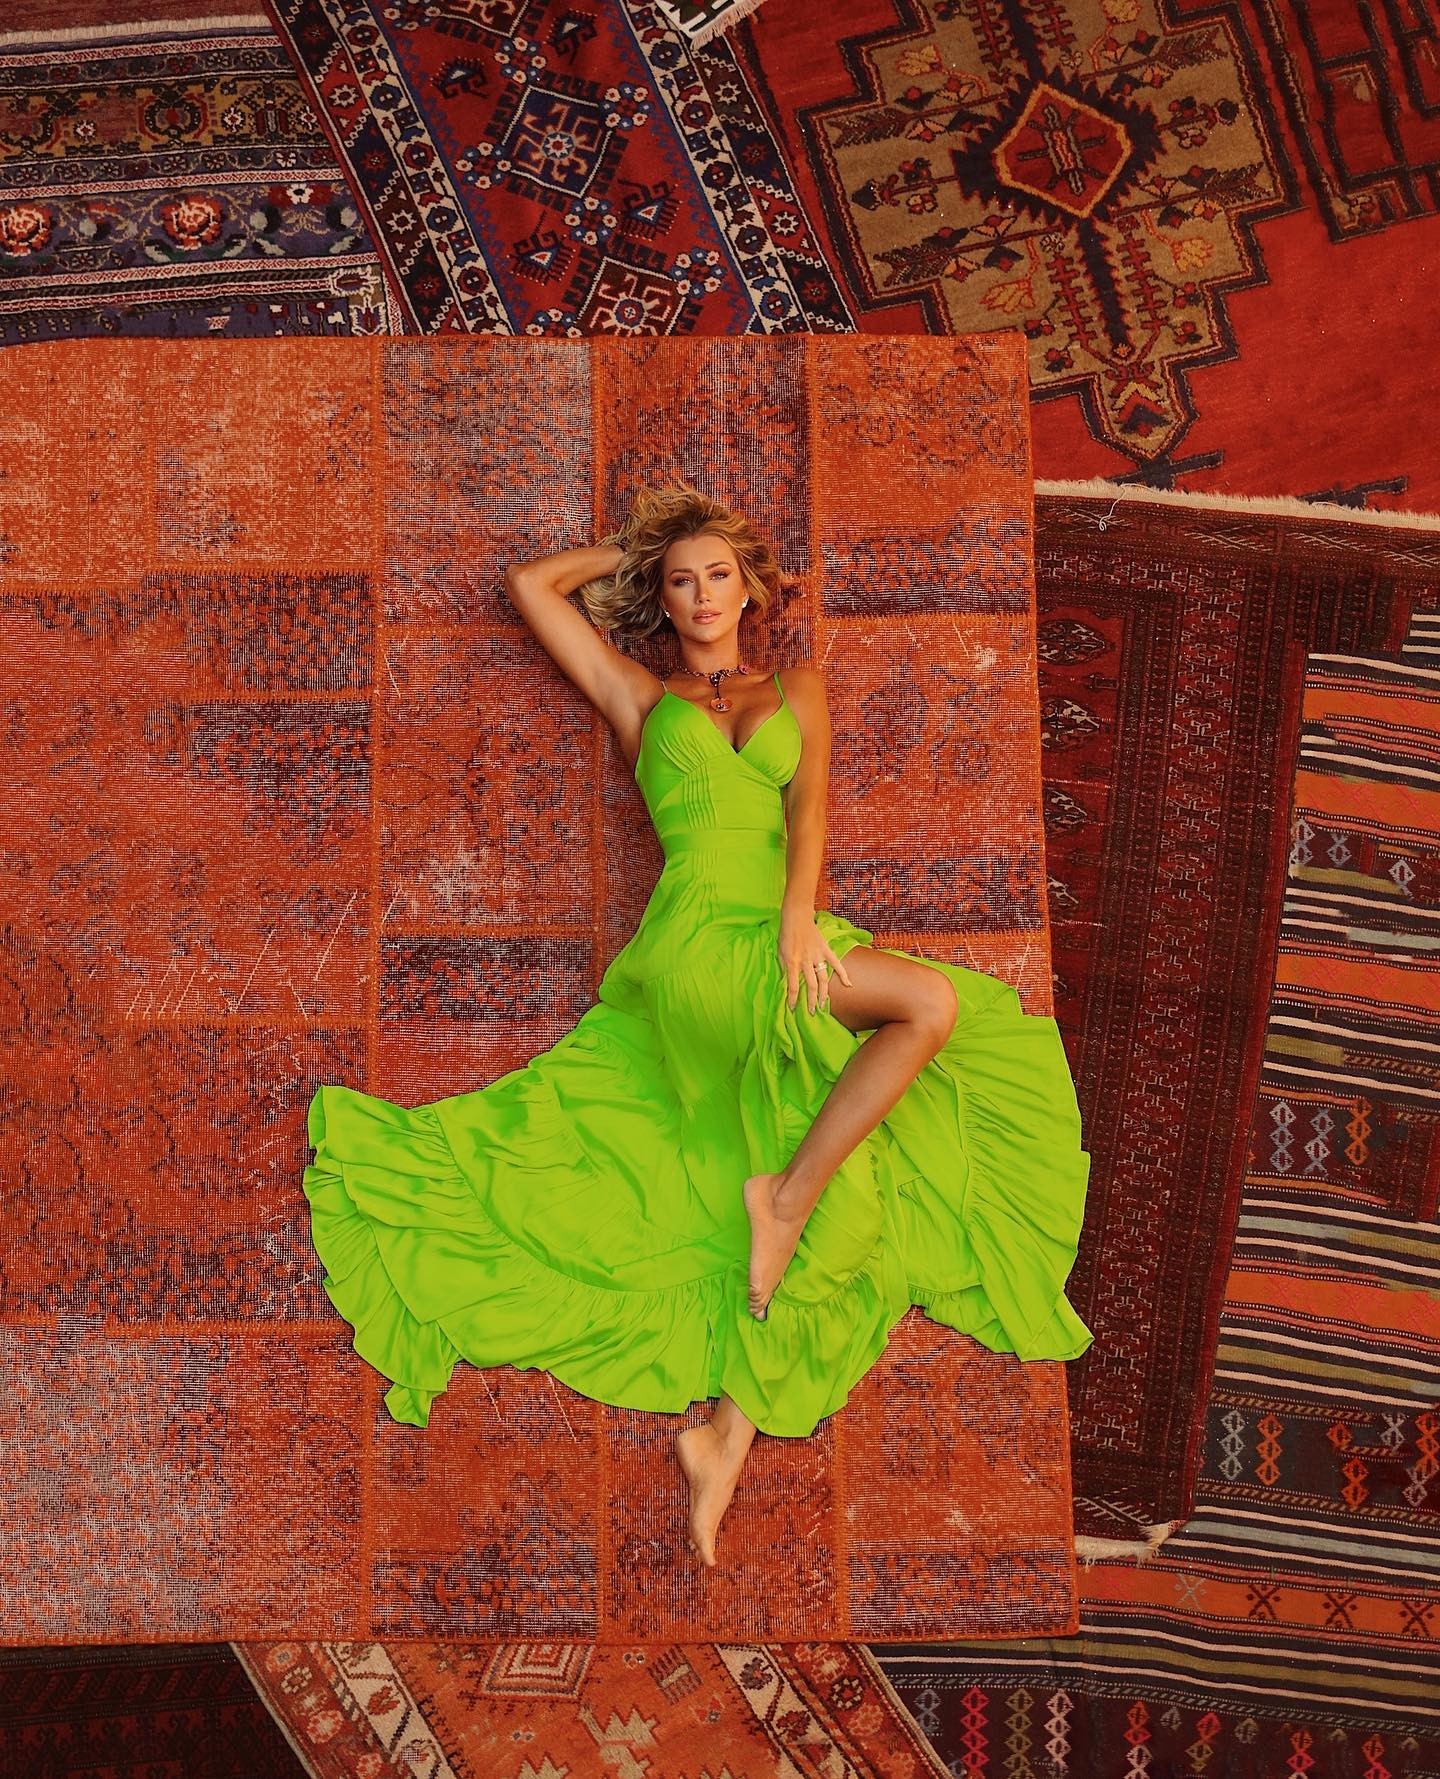 Ana Paula Siebert posa em tapeçaria milenar na Turquia e fãs elogiam: 'Deusa' (Foto: Reprodução / Instagram)